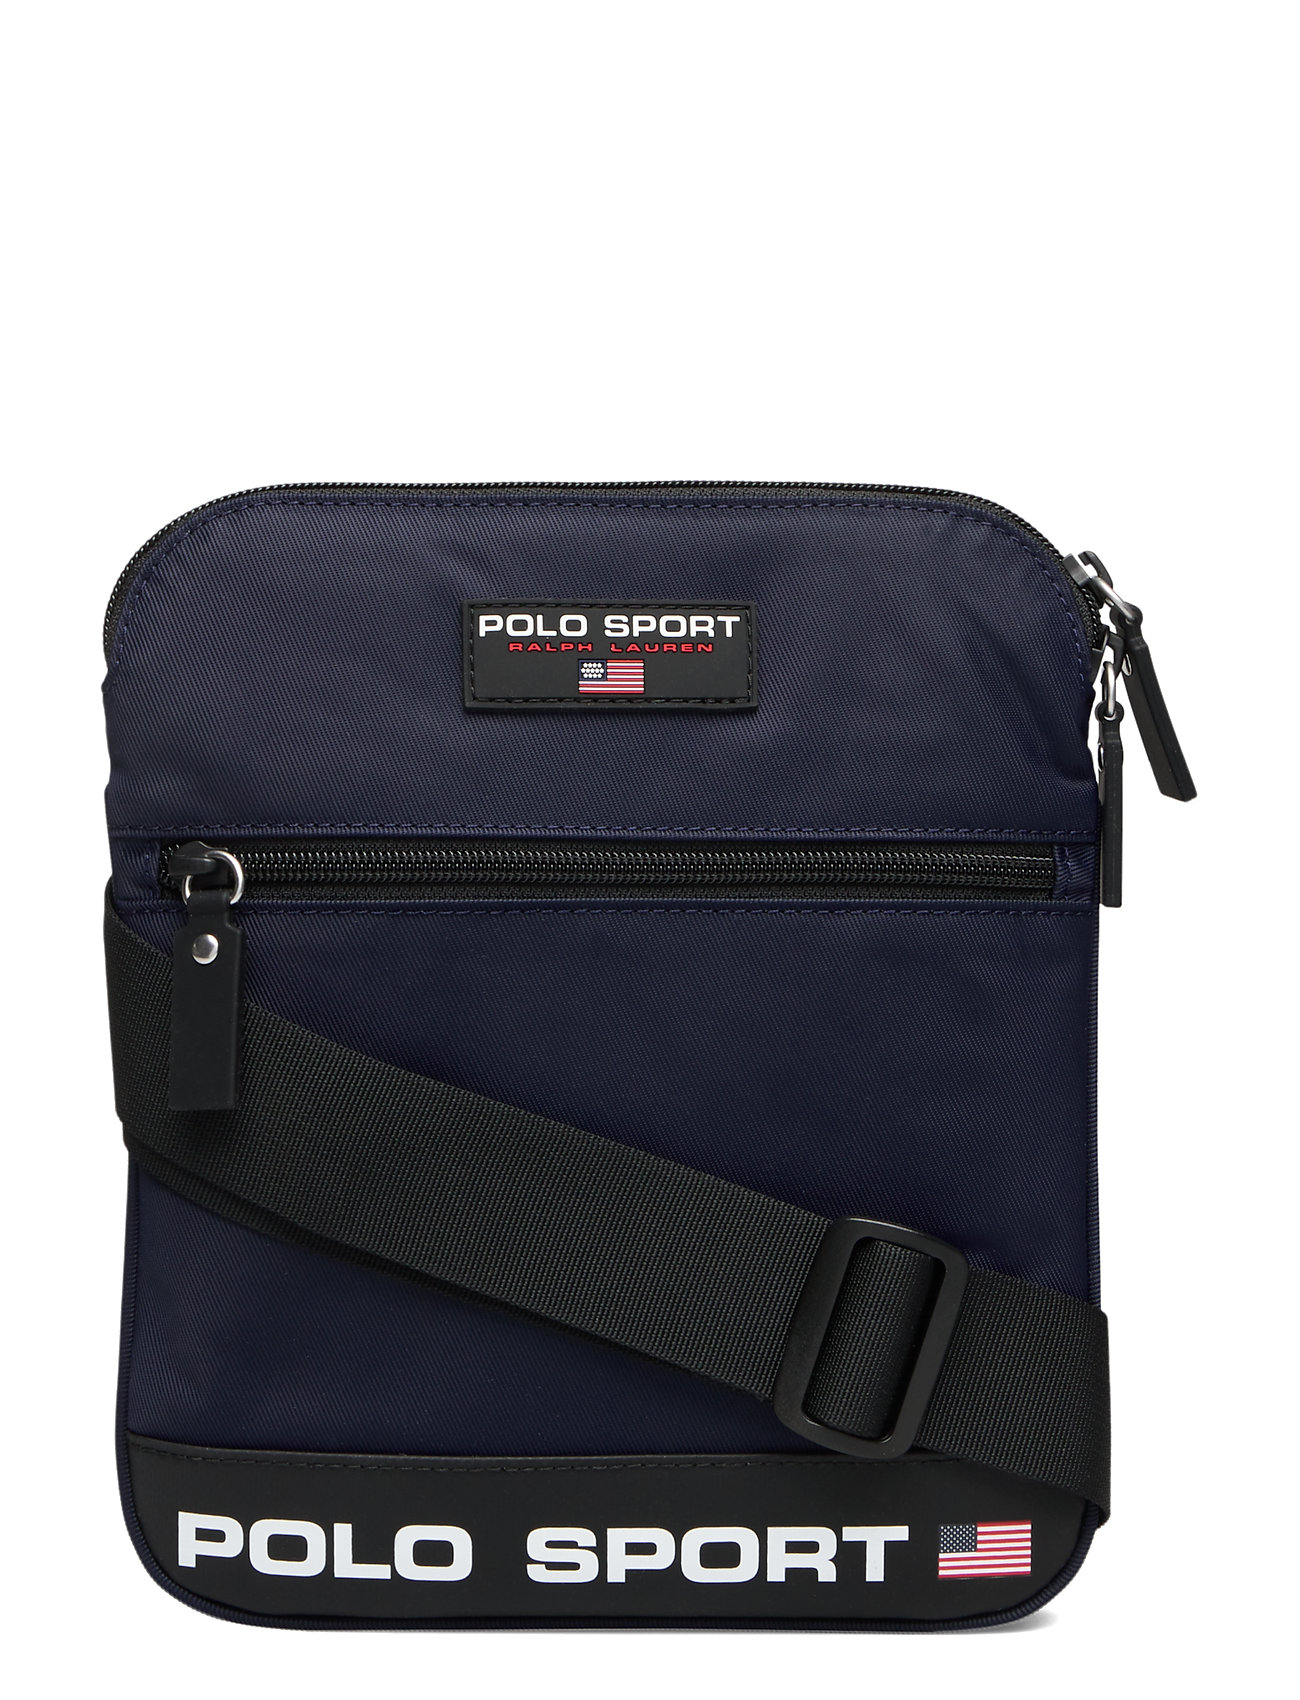 Polo Sport Crossbody Bag (Navy) (149.95 €) - Polo Ralph Lauren - | 0